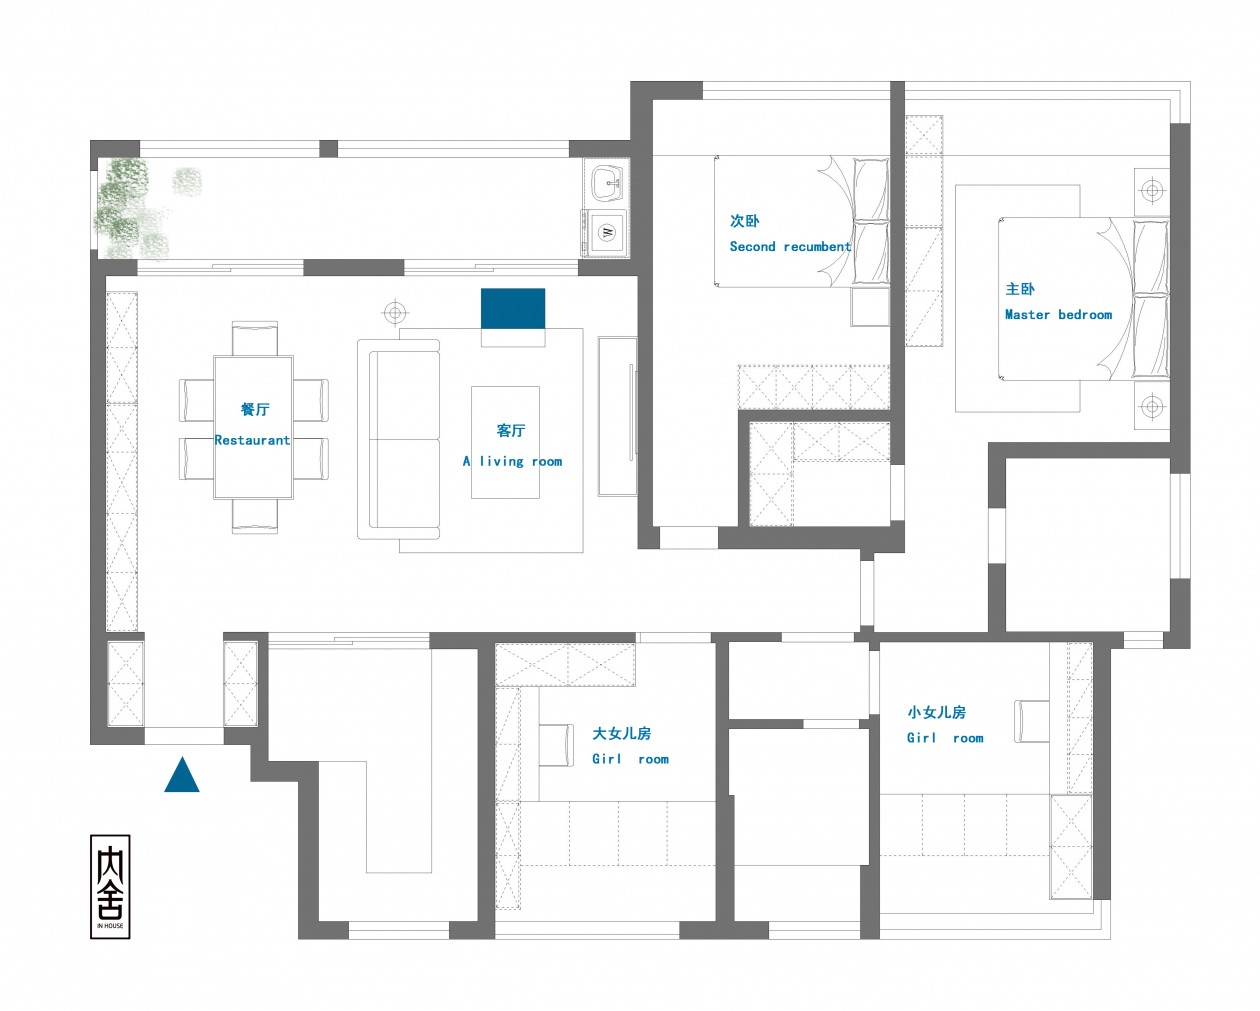 128现代四房装修效果图,给父母精装的居住空间装修案例效果图-美广网